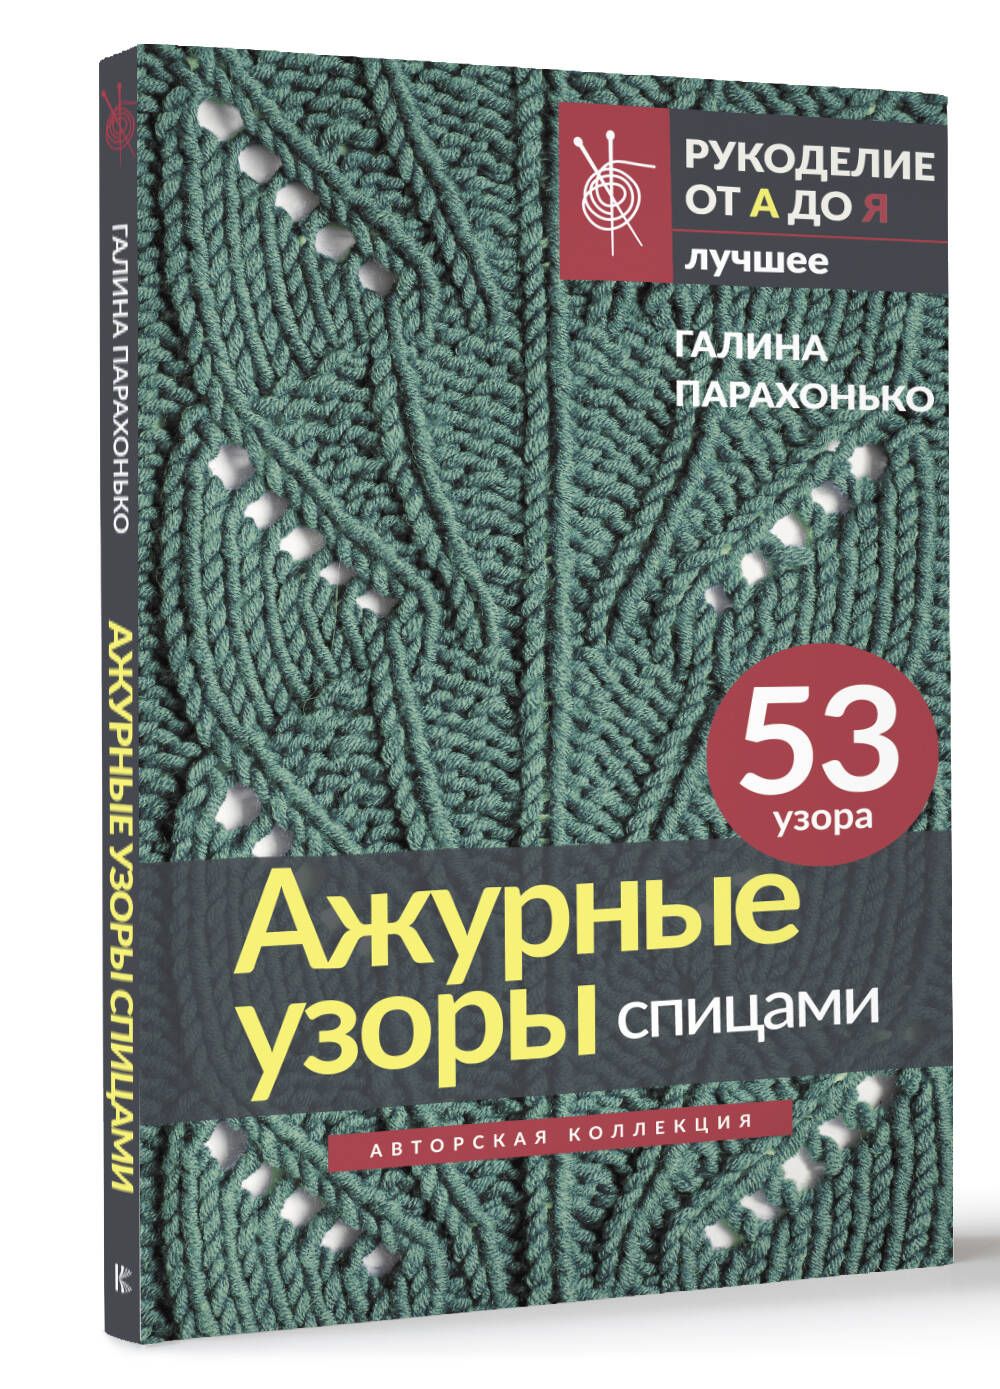 luchistii-sudak.ru • Просмотр темы - Книги по машинному вязанию. « luchistii-sudak.ru